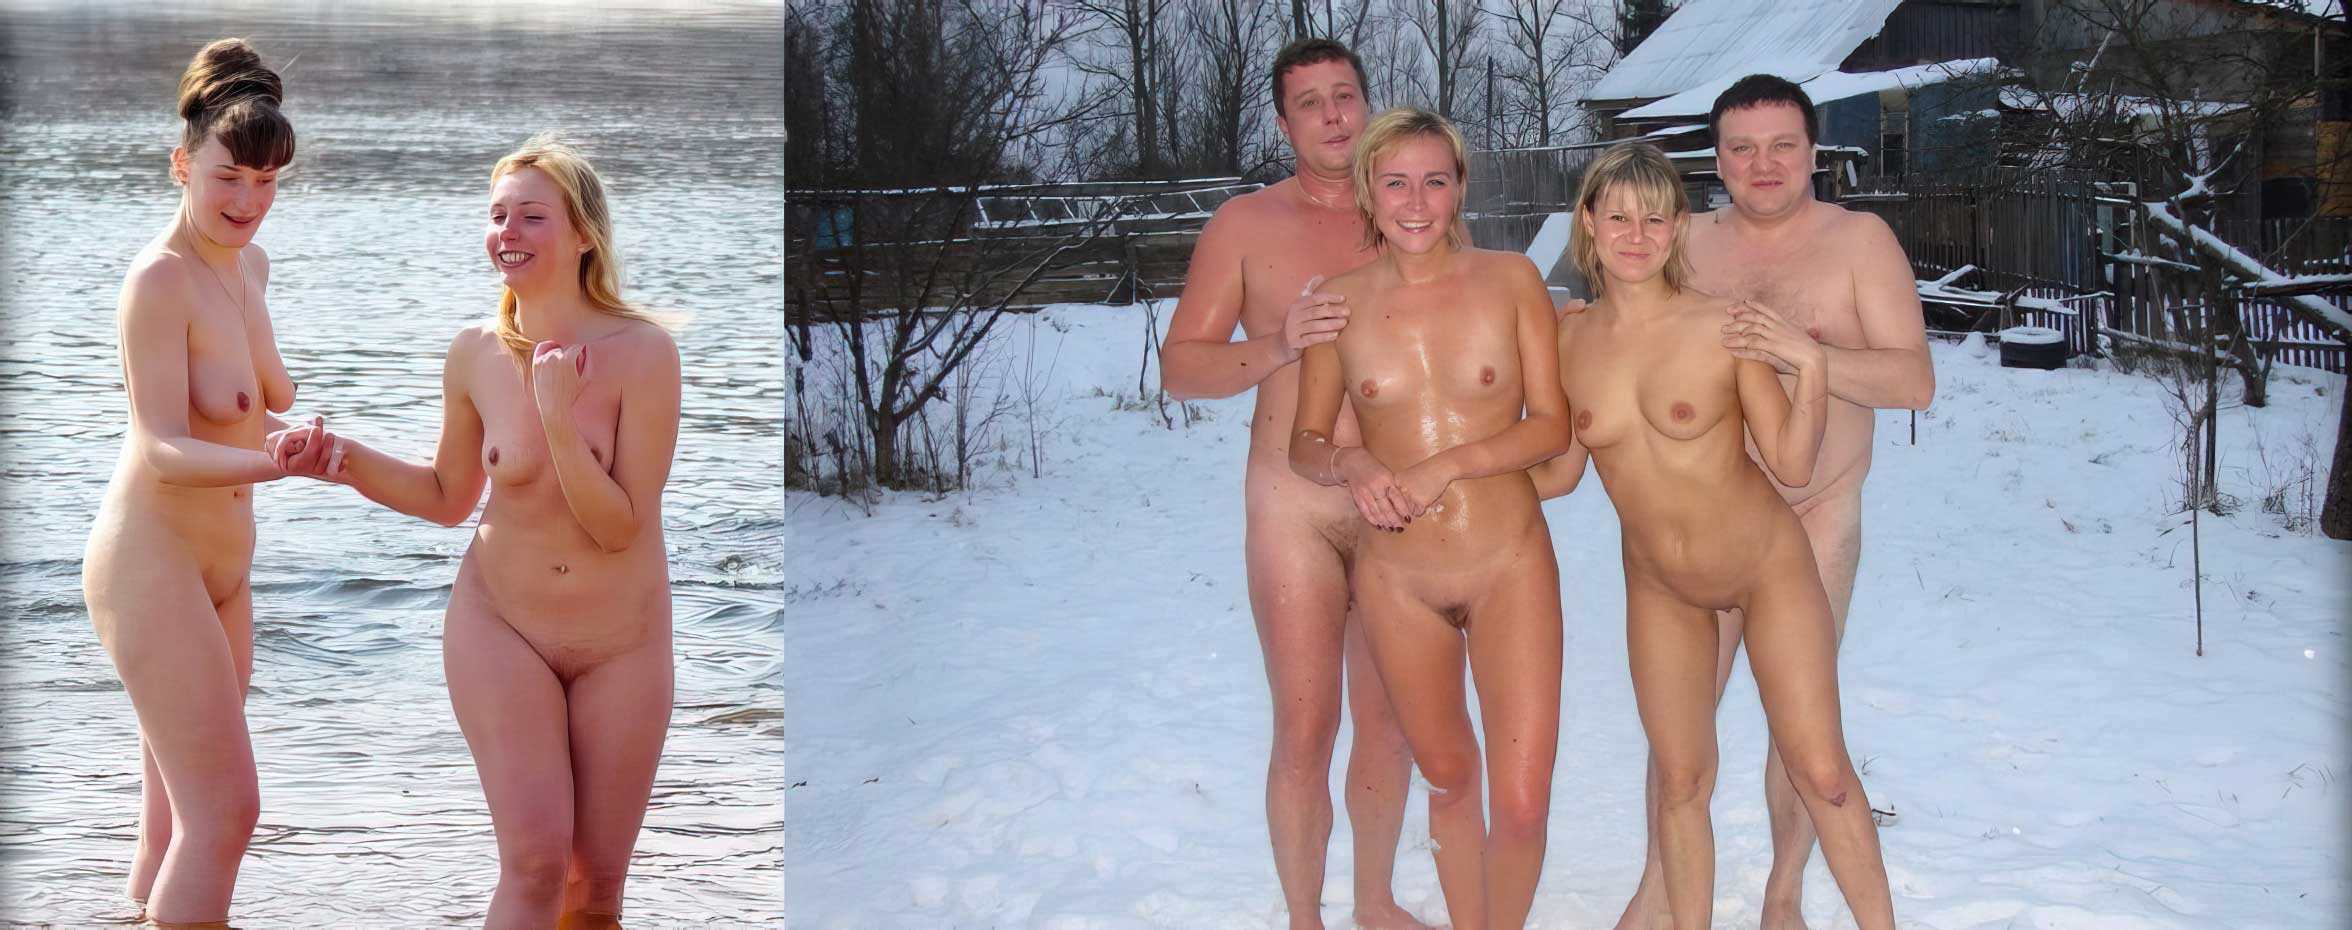 семья купается голыми в бане фото 99